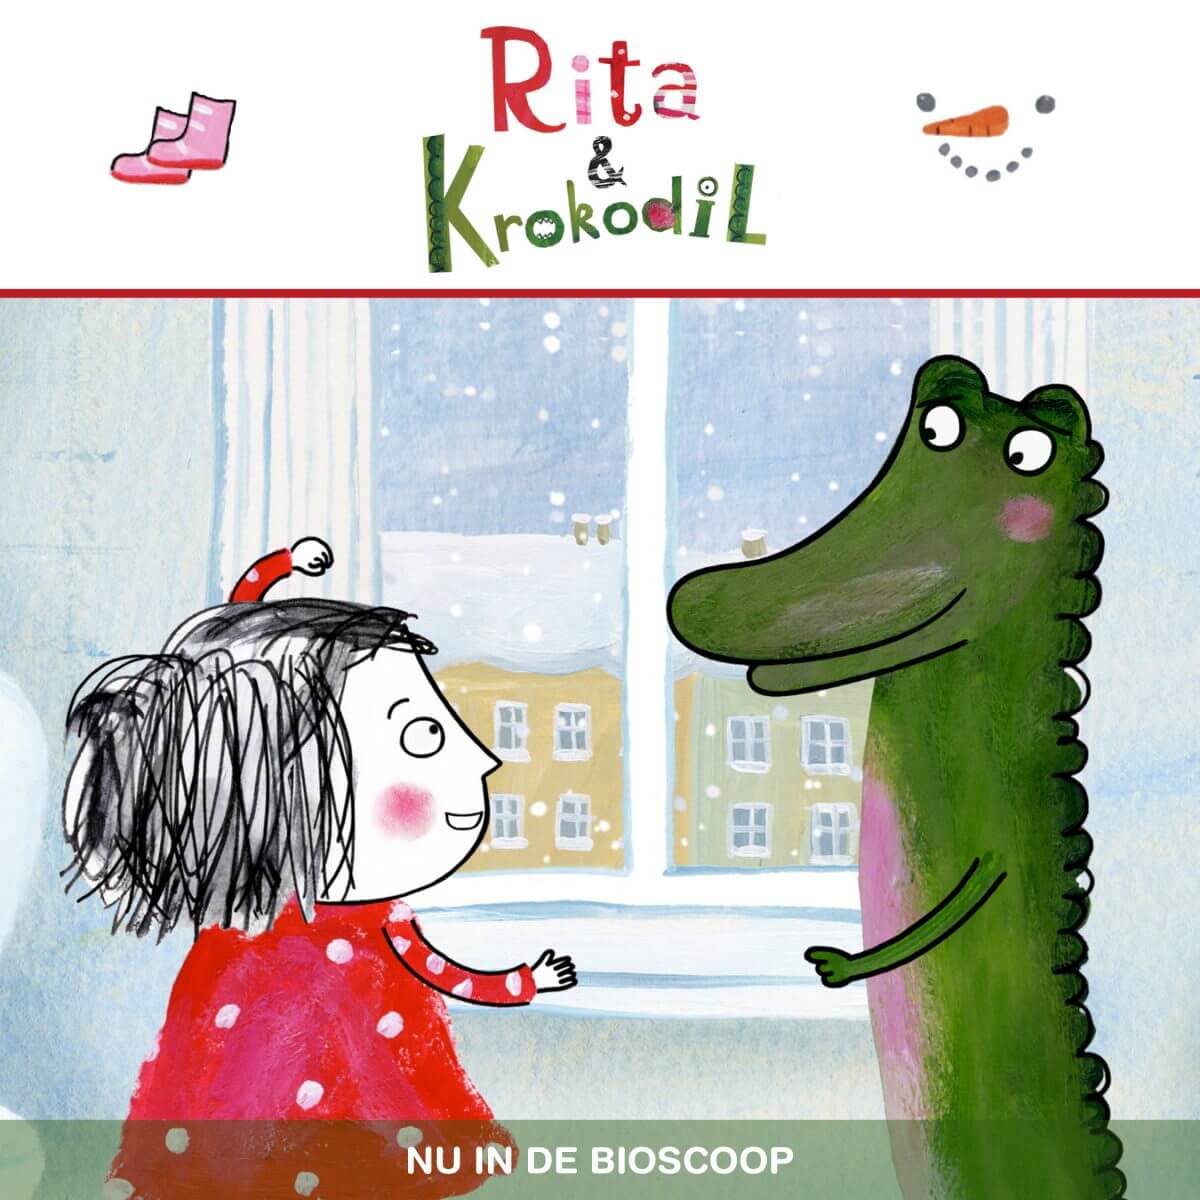 Filmtip voor de kerstvakantie: Rita & Krokodil (2+),